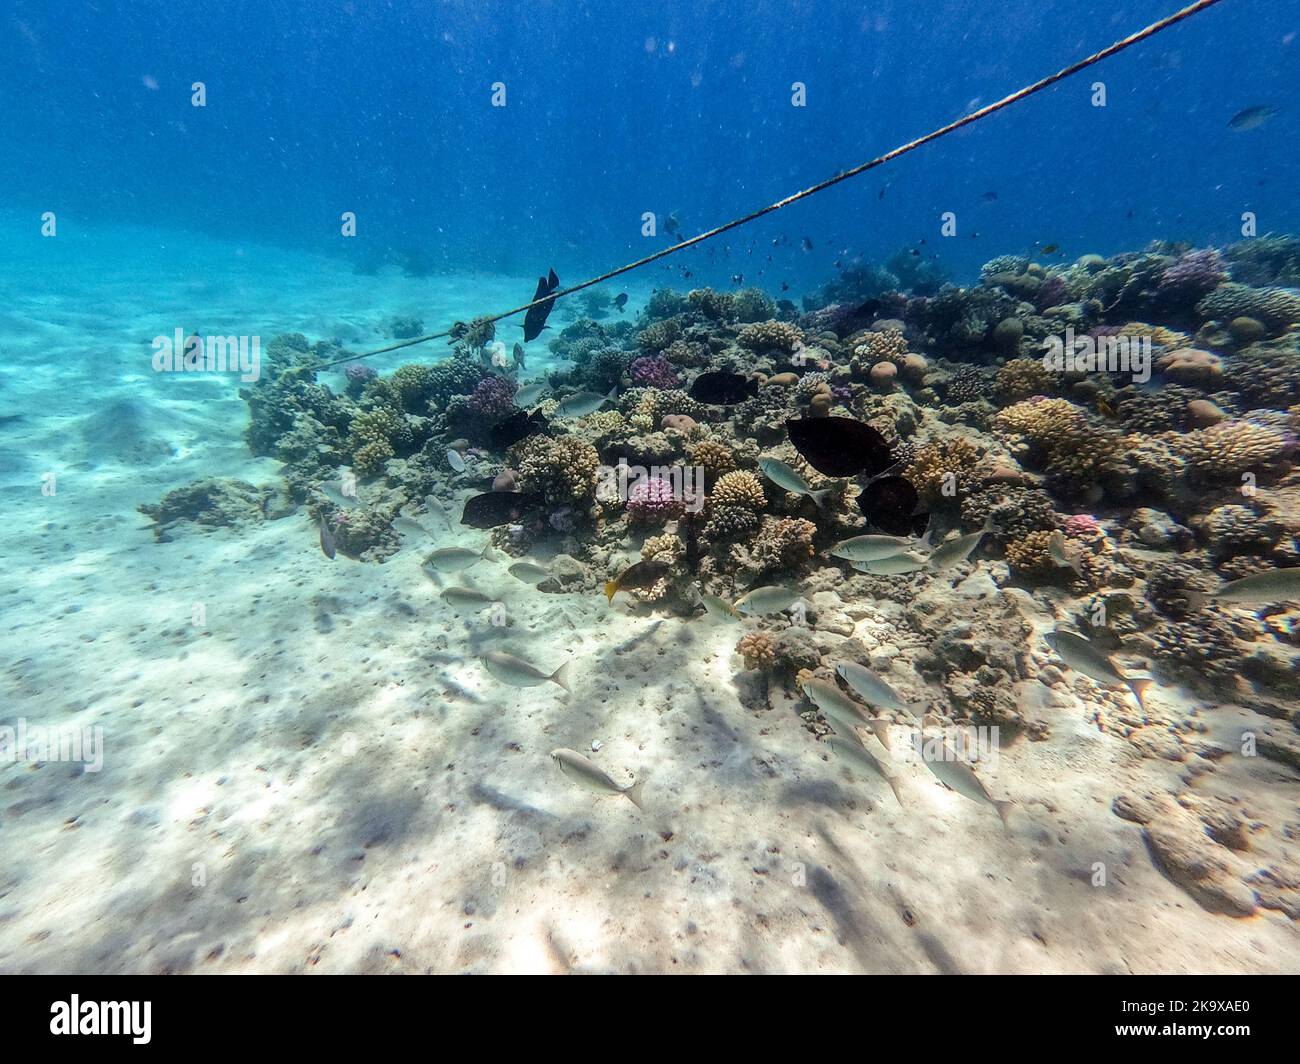 Chorizo de sargos o dorada blanca conocido como el pez diplodus Sargus bajo el agua en el arrecife de coral. Vida submarina de arrecife con corales y peces tropicales Foto de stock